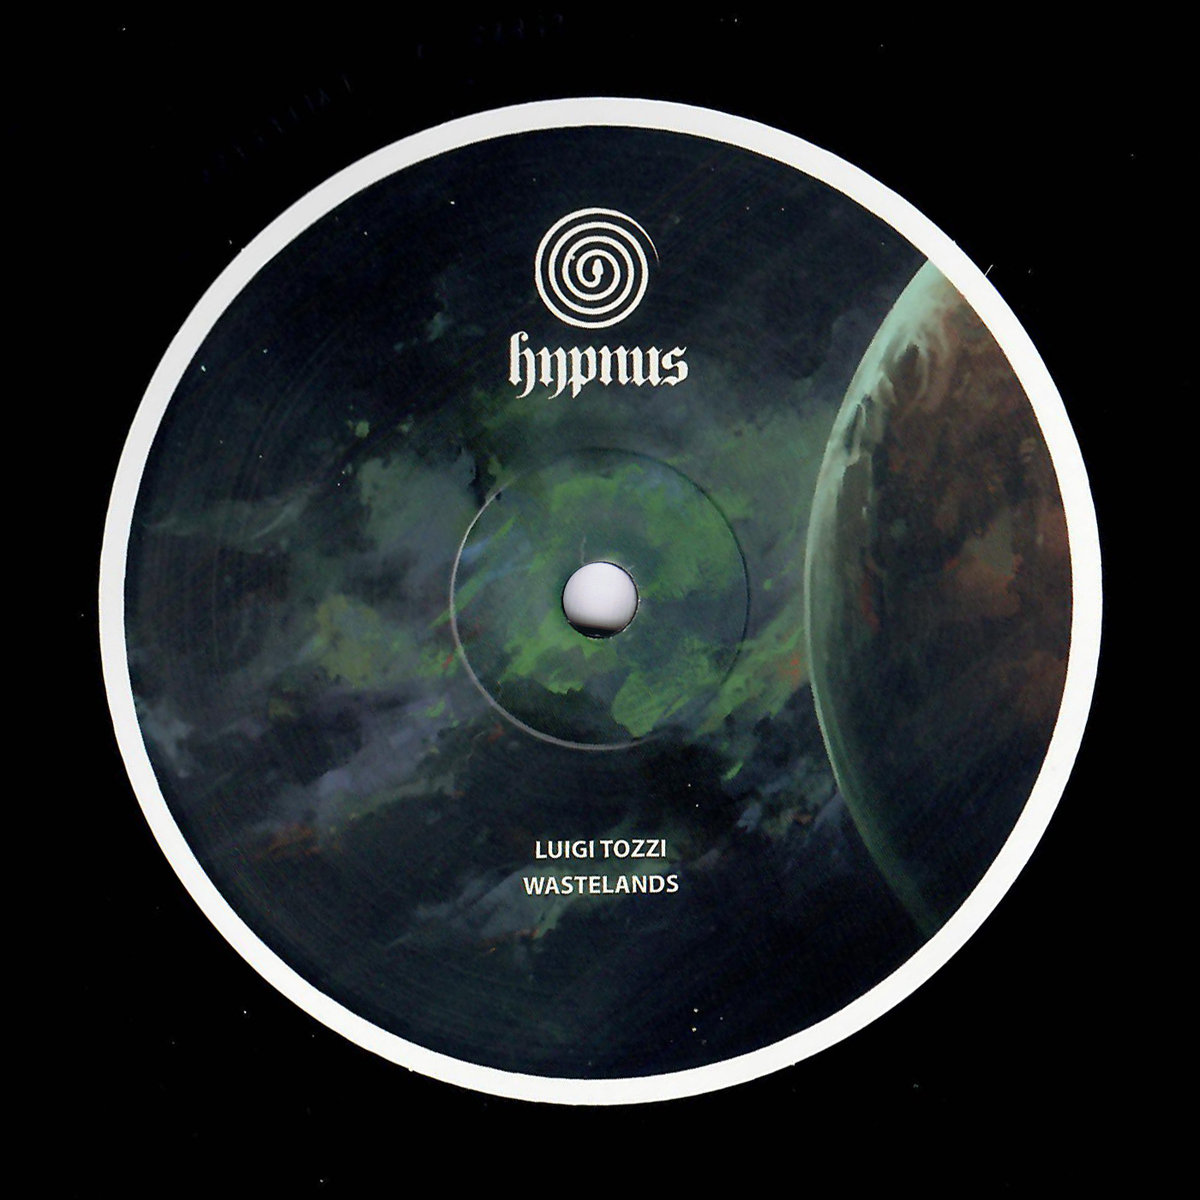 image cover: Luigi Tozzi - Wastelands / Hypnus Records